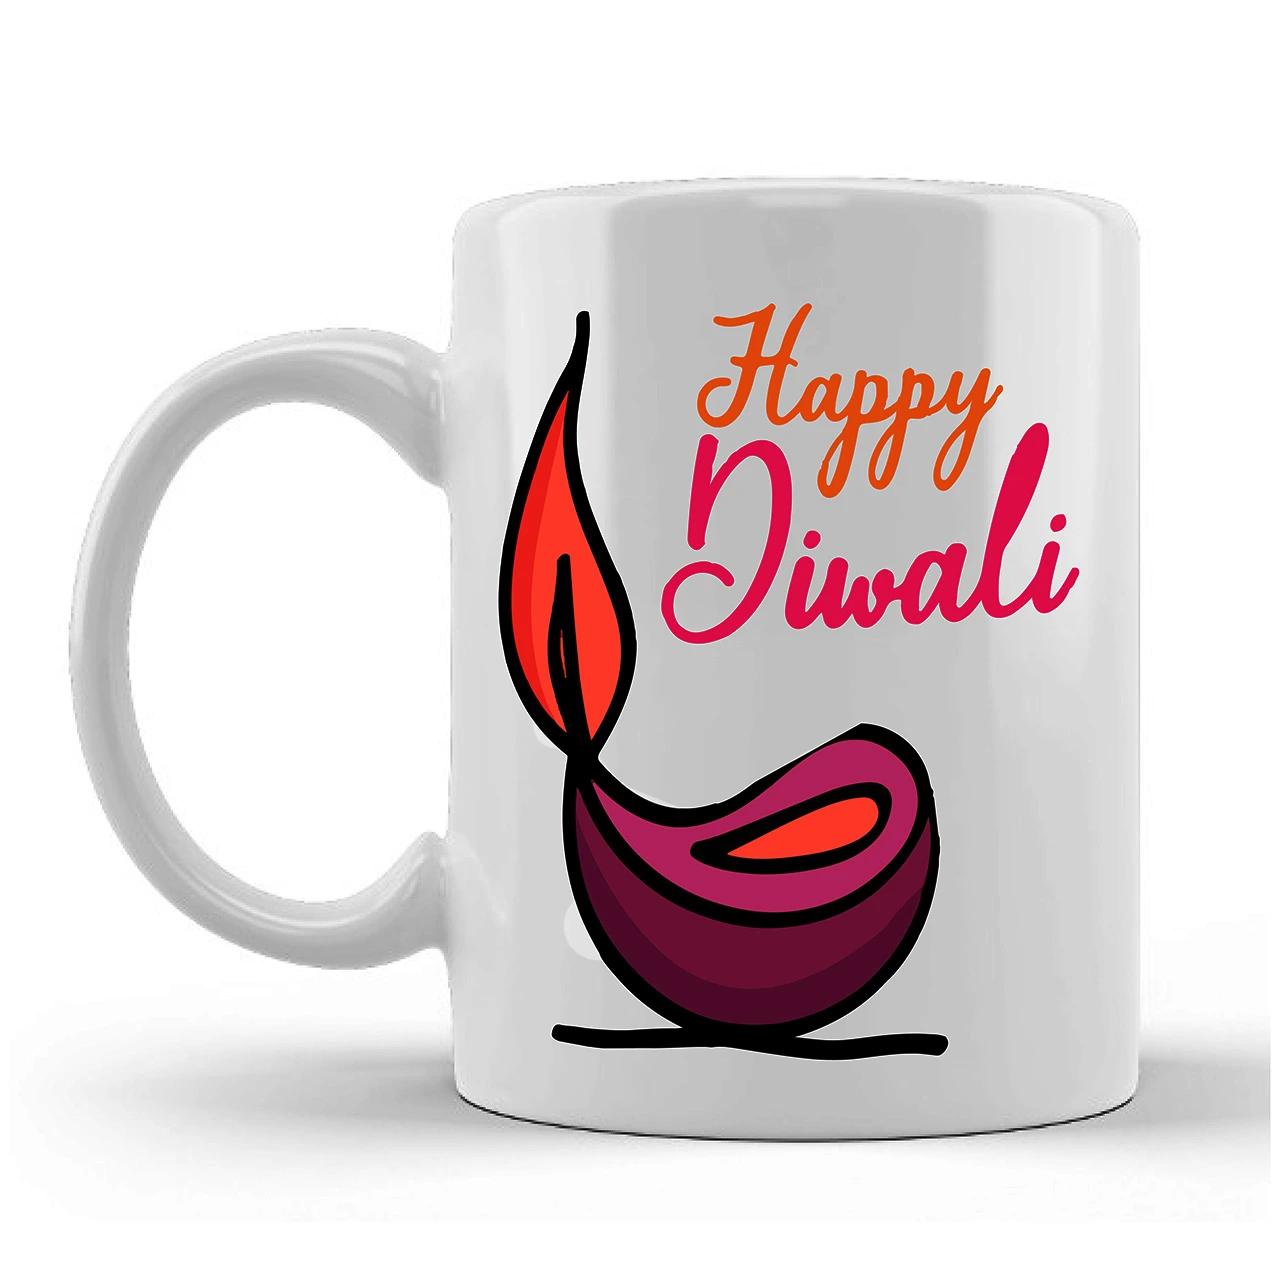 Happy Diwali Printed Ceramic Mug Gifts for | Diwali Gifts, Diwali Gift Items, Diwali Gifts for Friends, Diwali Gifts for Friends and Family, Gifts for Diwali (Design 1)